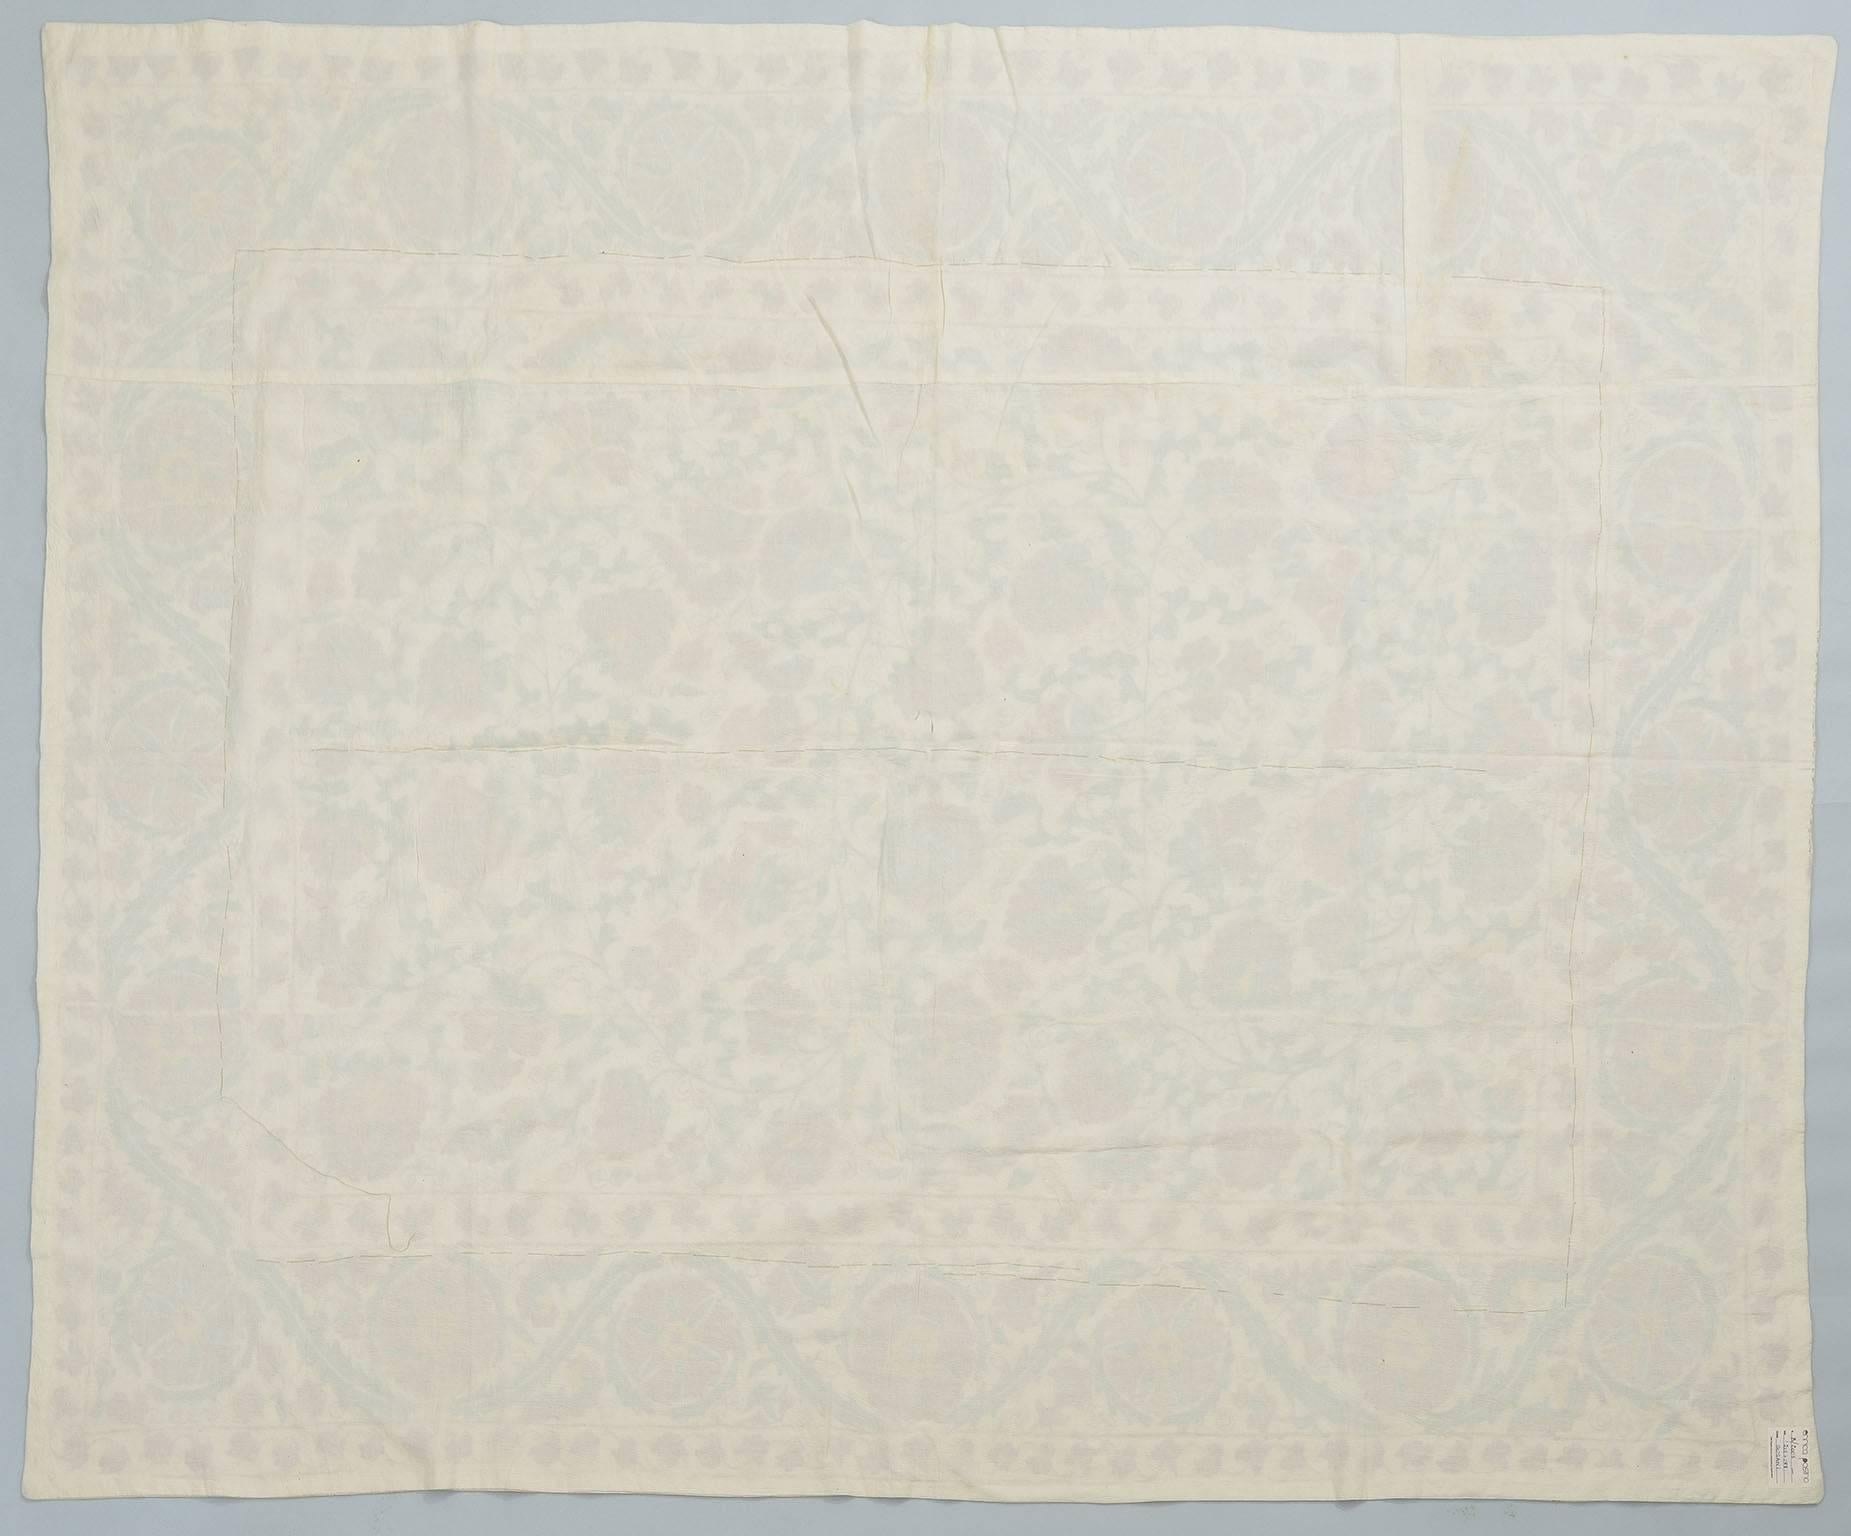 Festliche und elegante Susani-Stickerei, geeignet für Bett, Tisch oder Wand.
Seidenstickerei auf Baumwollgrund. B/ 2003 - cm.  213x 177.
  